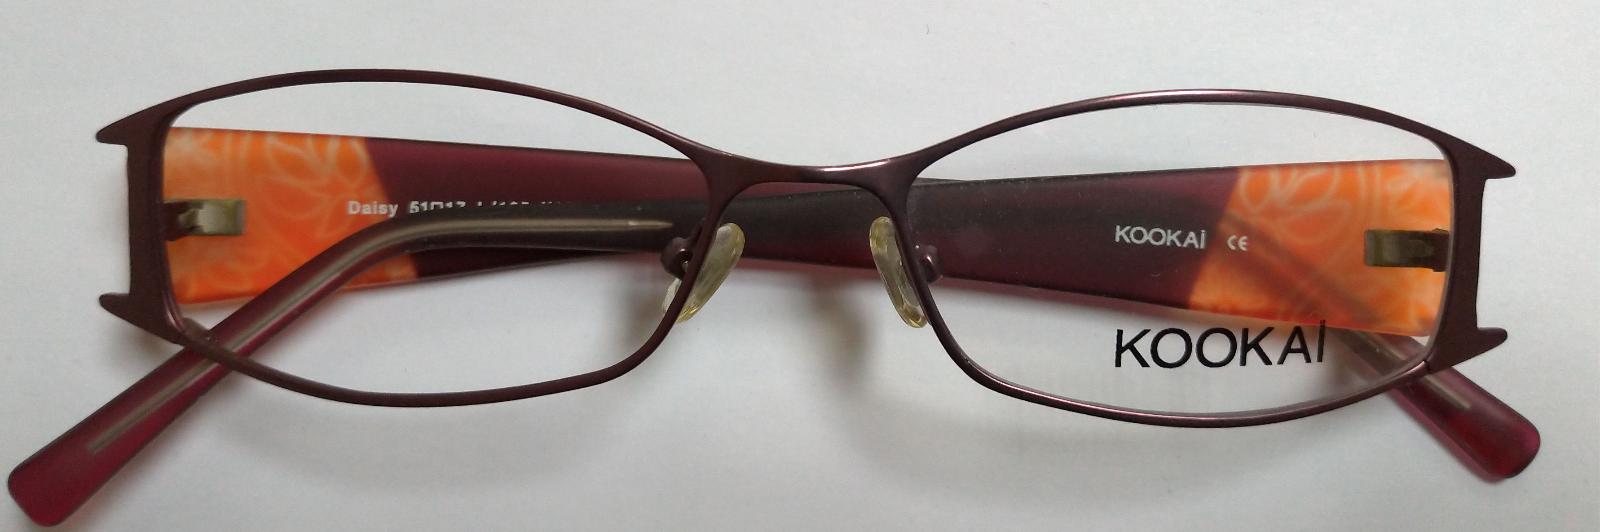 okuliarová obruba dámska KOOKAI Daisy 51-17-135 mm DMOC: 2500 Kč výpredaj - Lekáreň a zdravie